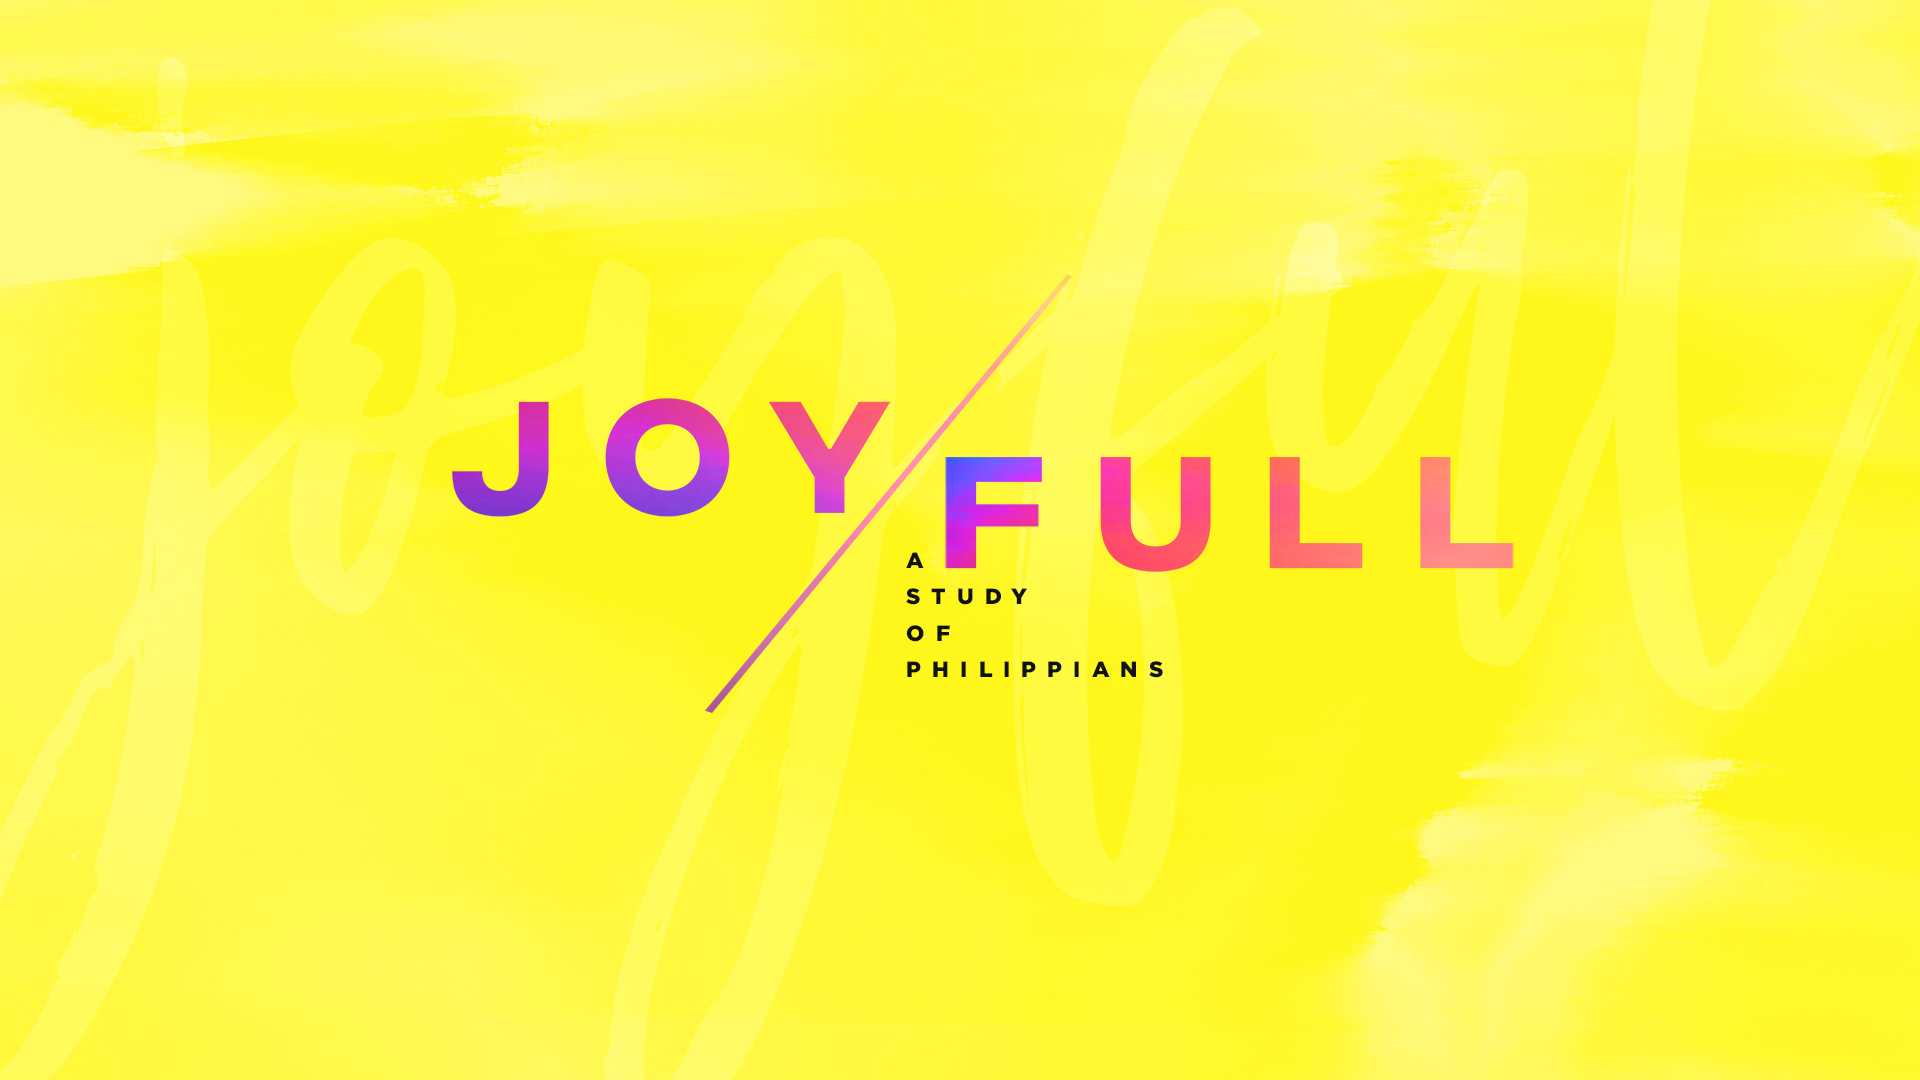 Joy/Full: a Study of Philippians